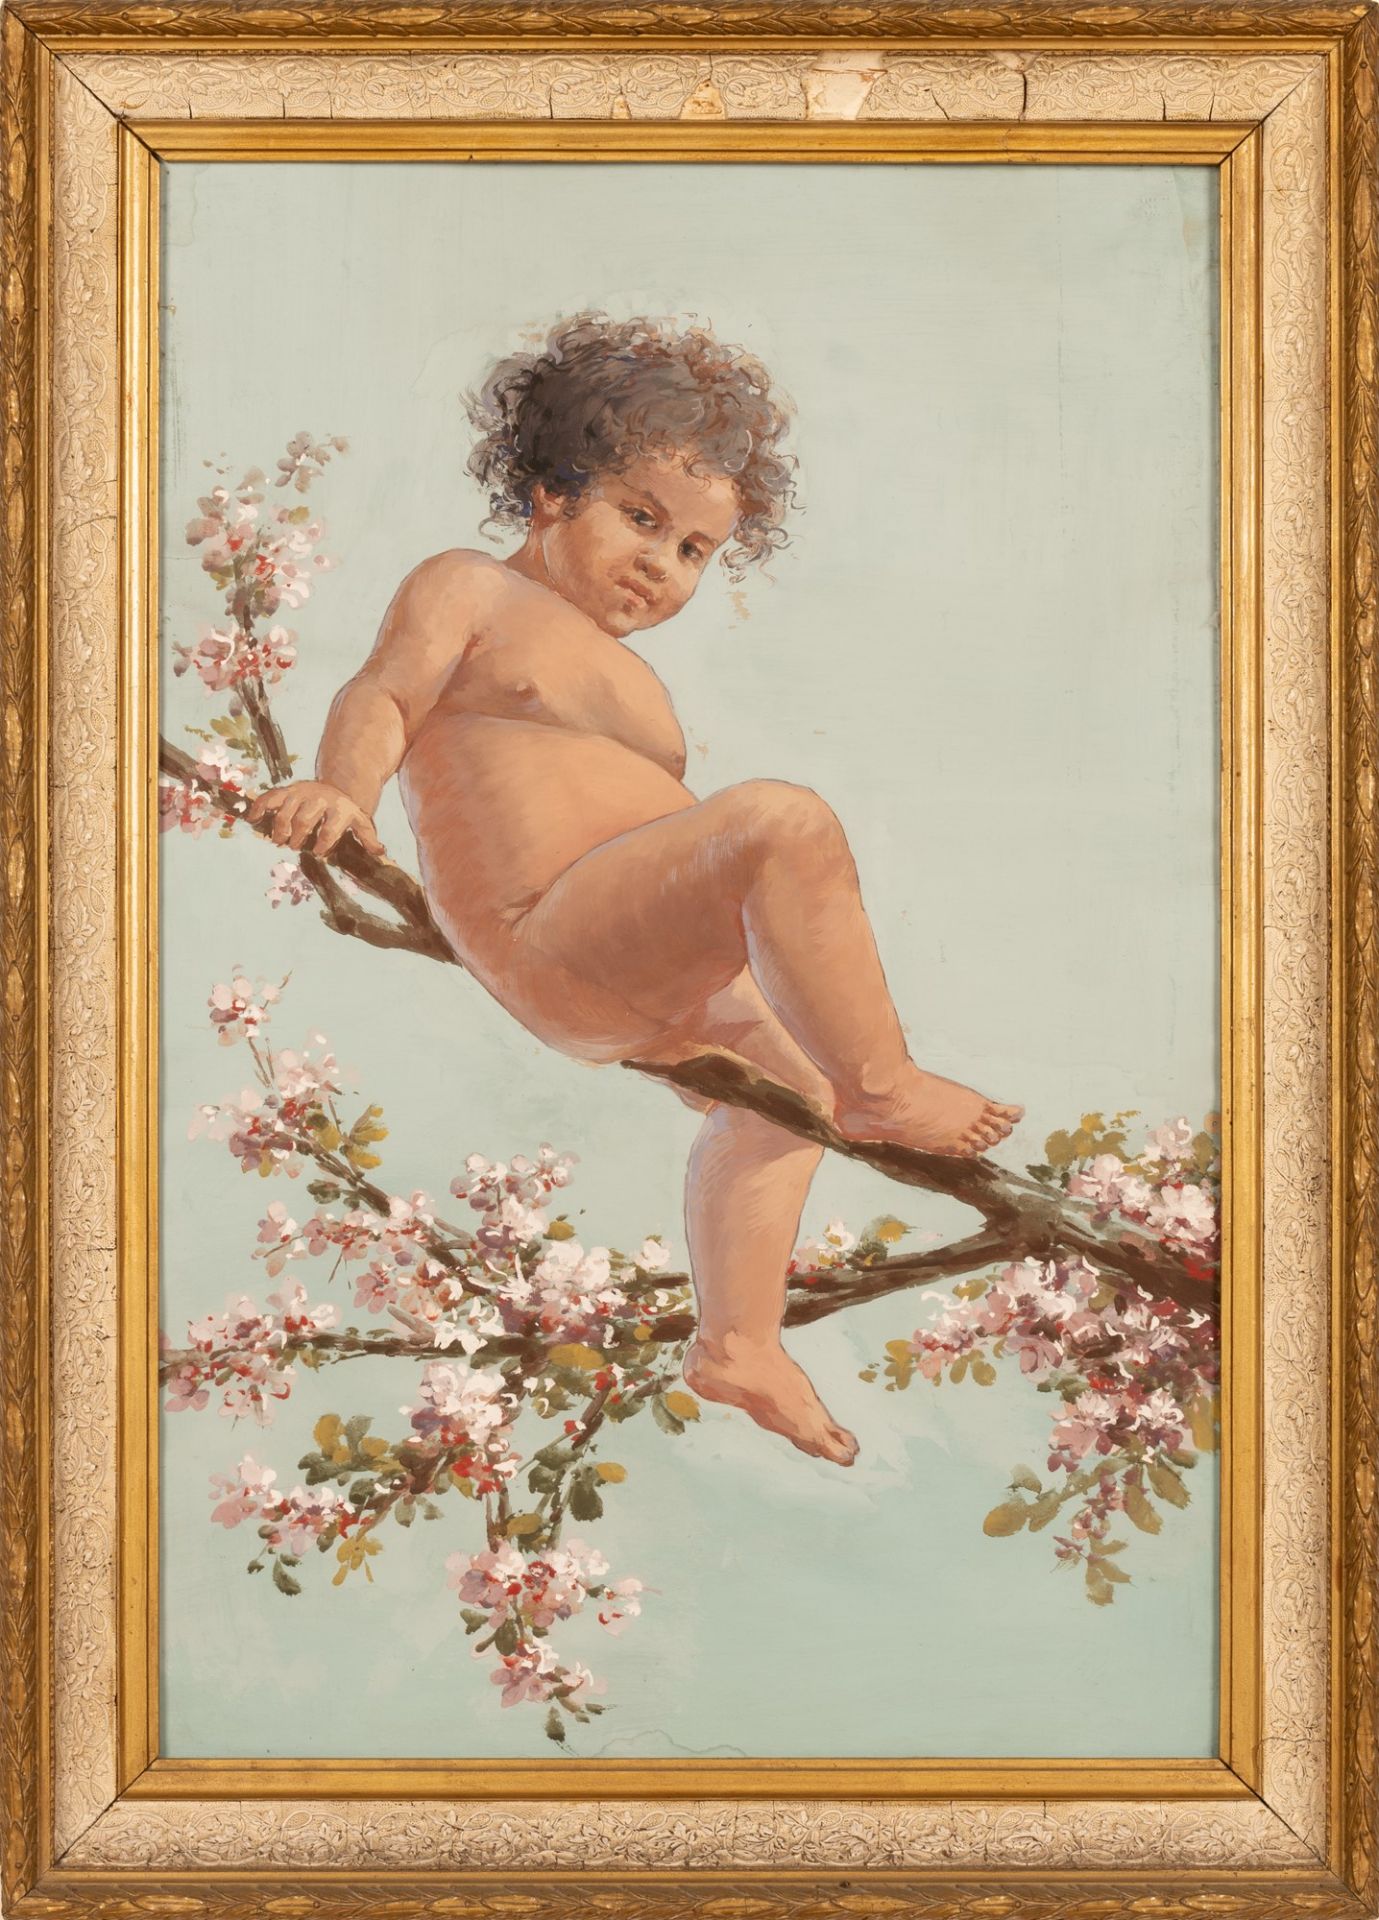 Bambino nudo su mandorlo in fiore - Image 3 of 6